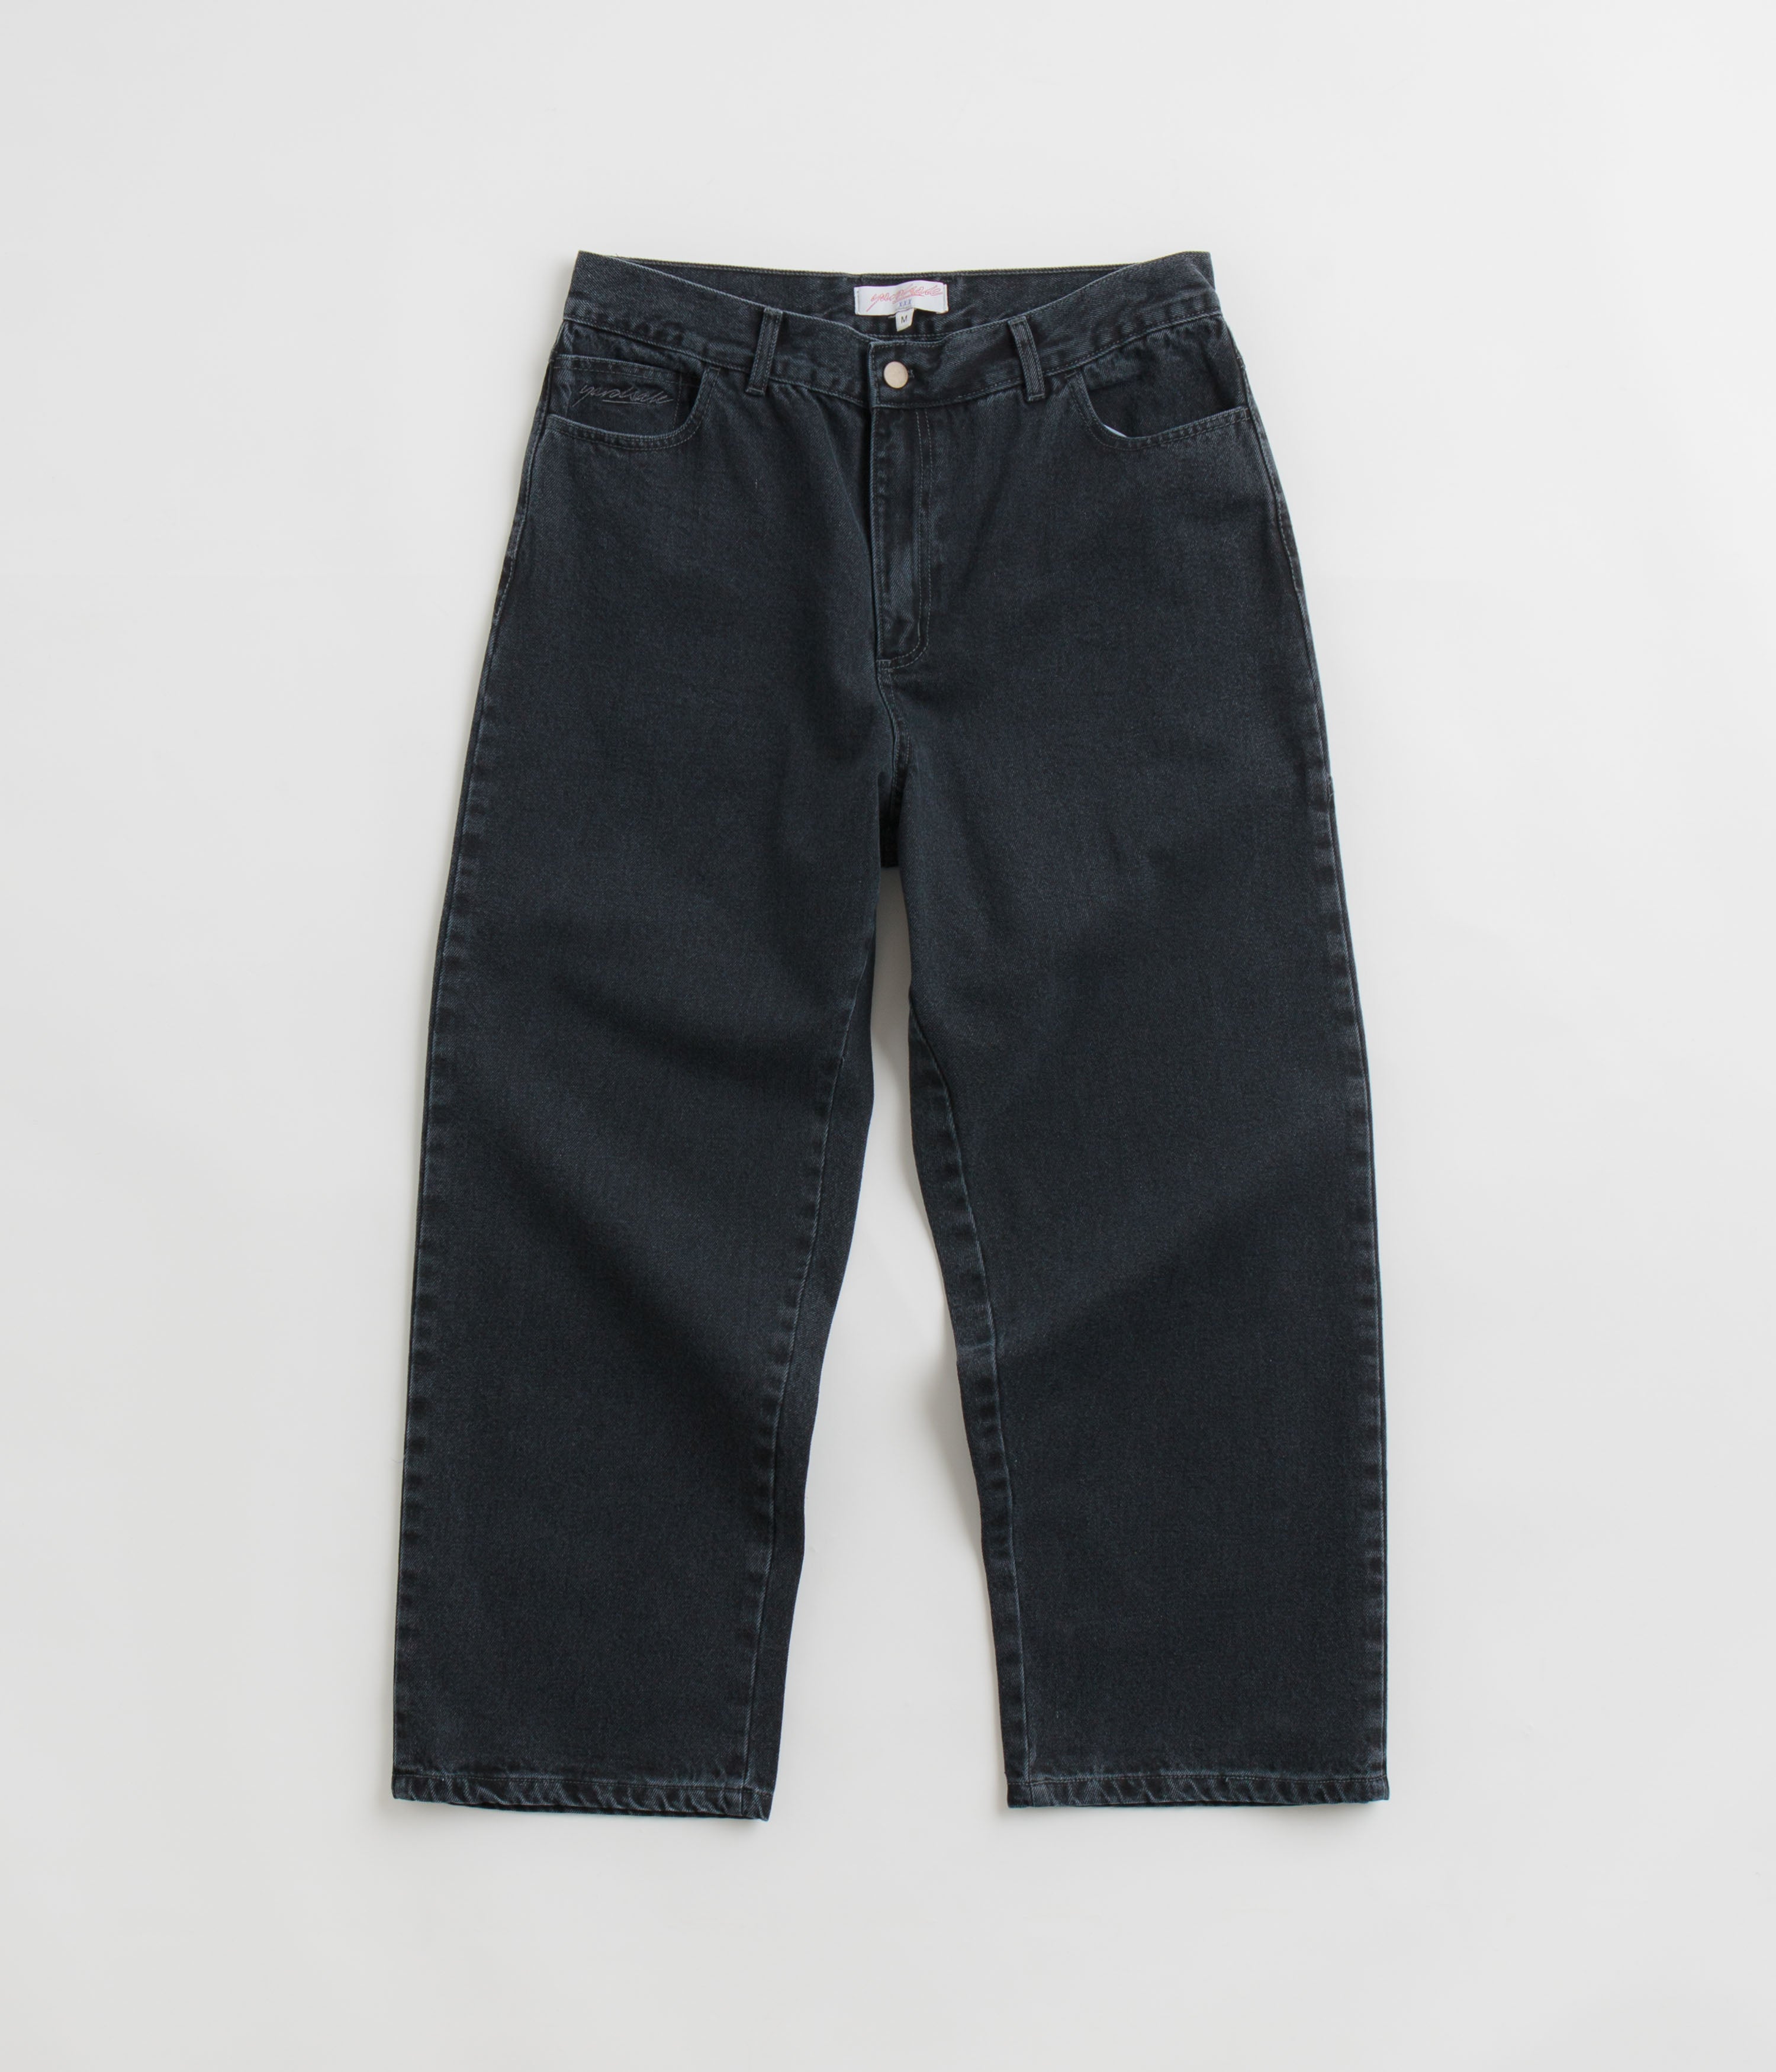 品質Yardsale Phantasy Ripper Jeans パンツ